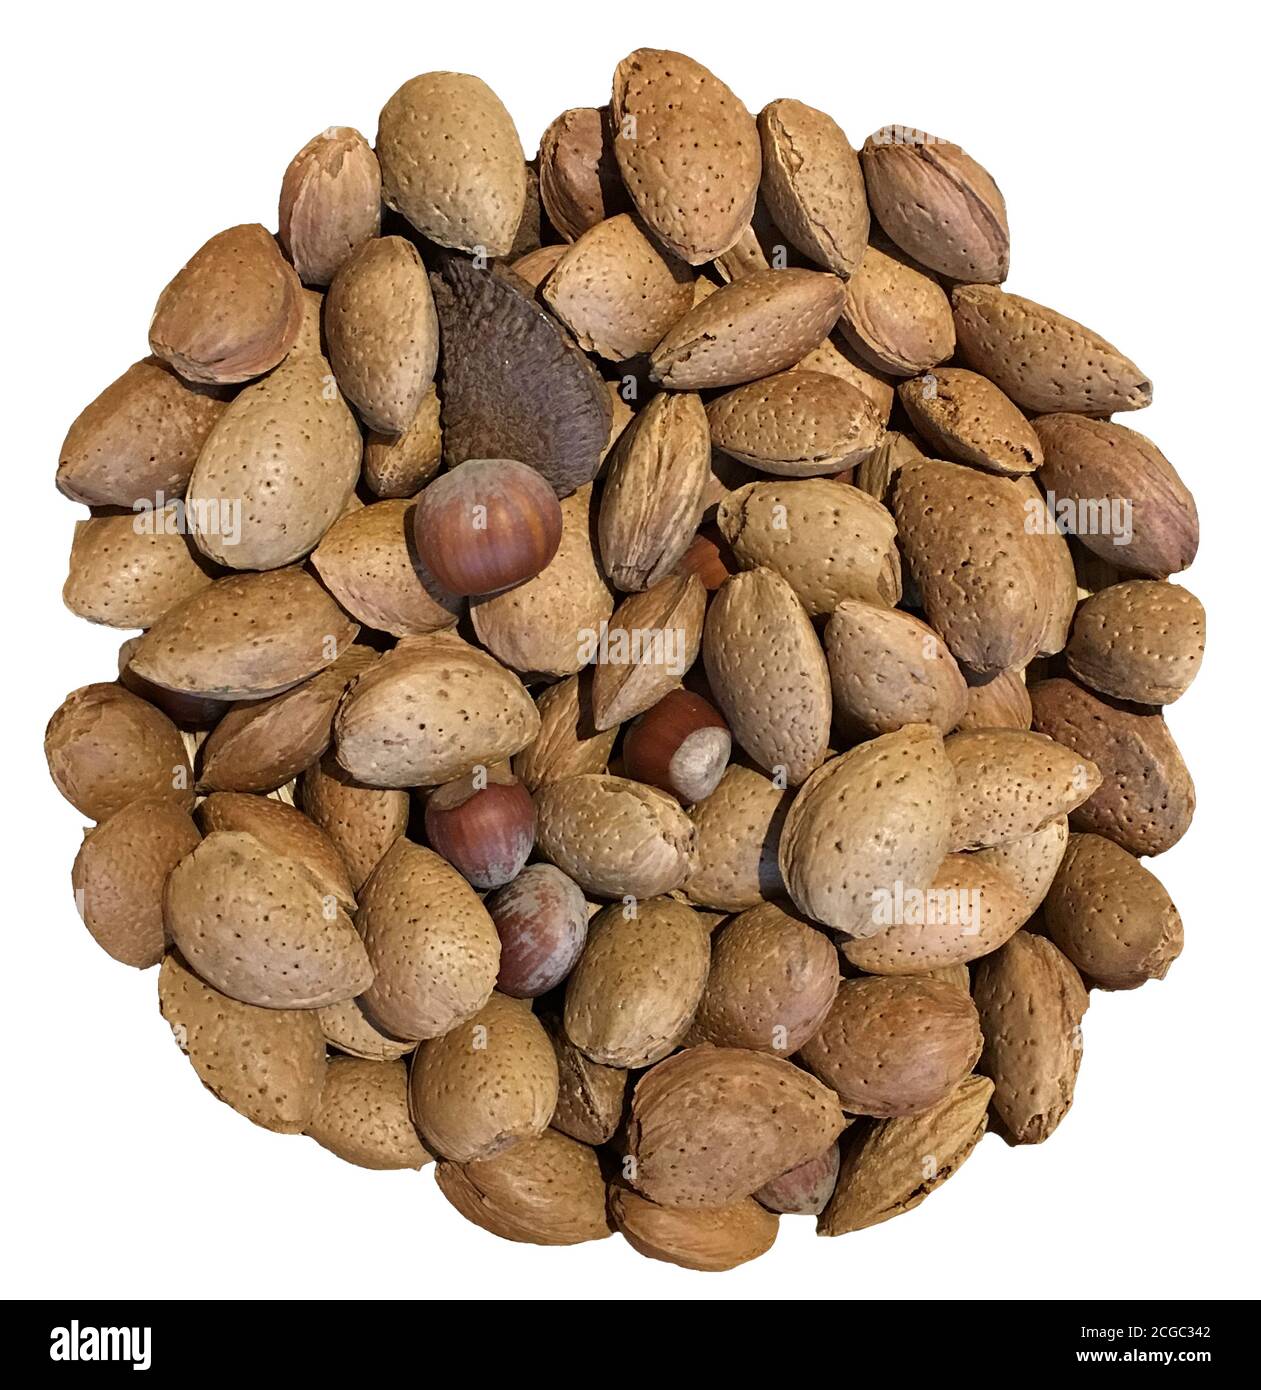 Ein Kreis von gemischten Nüssen einschließlich Mandeln, Haselnüsse, Brasilnüsse, Walnüsse. Nüsse sind eine gute Quelle von Protein. Stockfoto